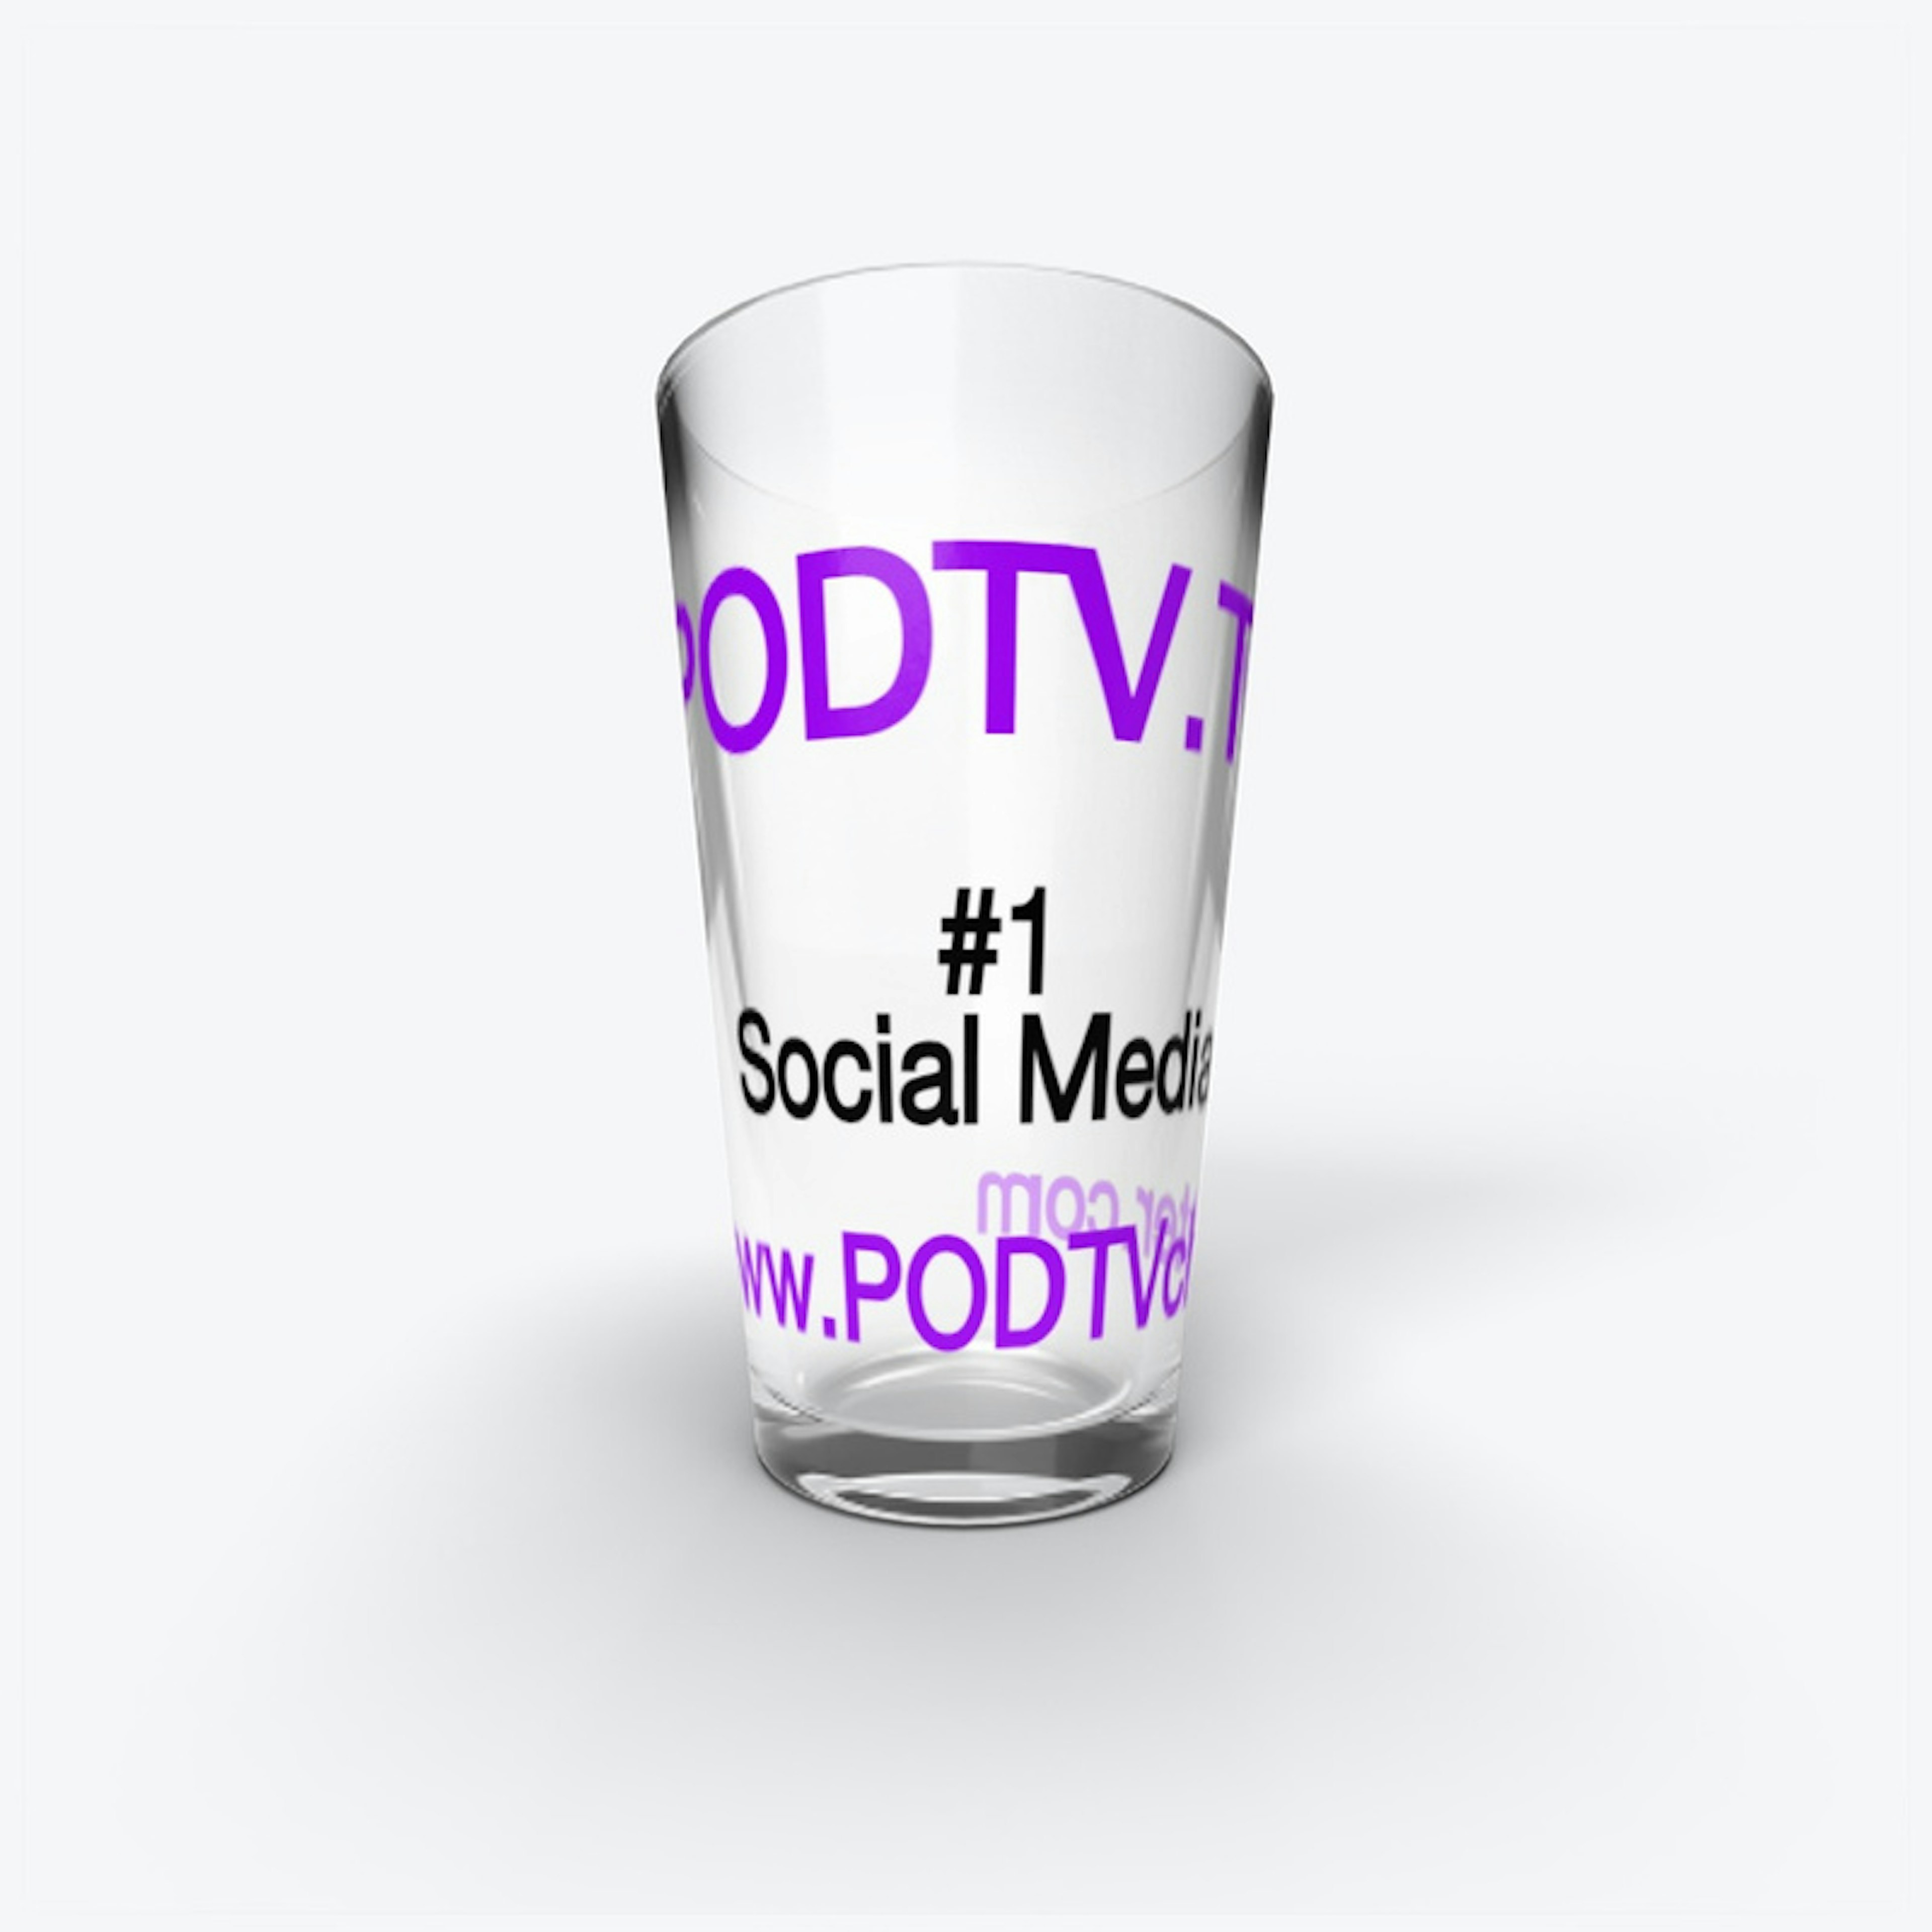 PODTV Social Media Pint Glass